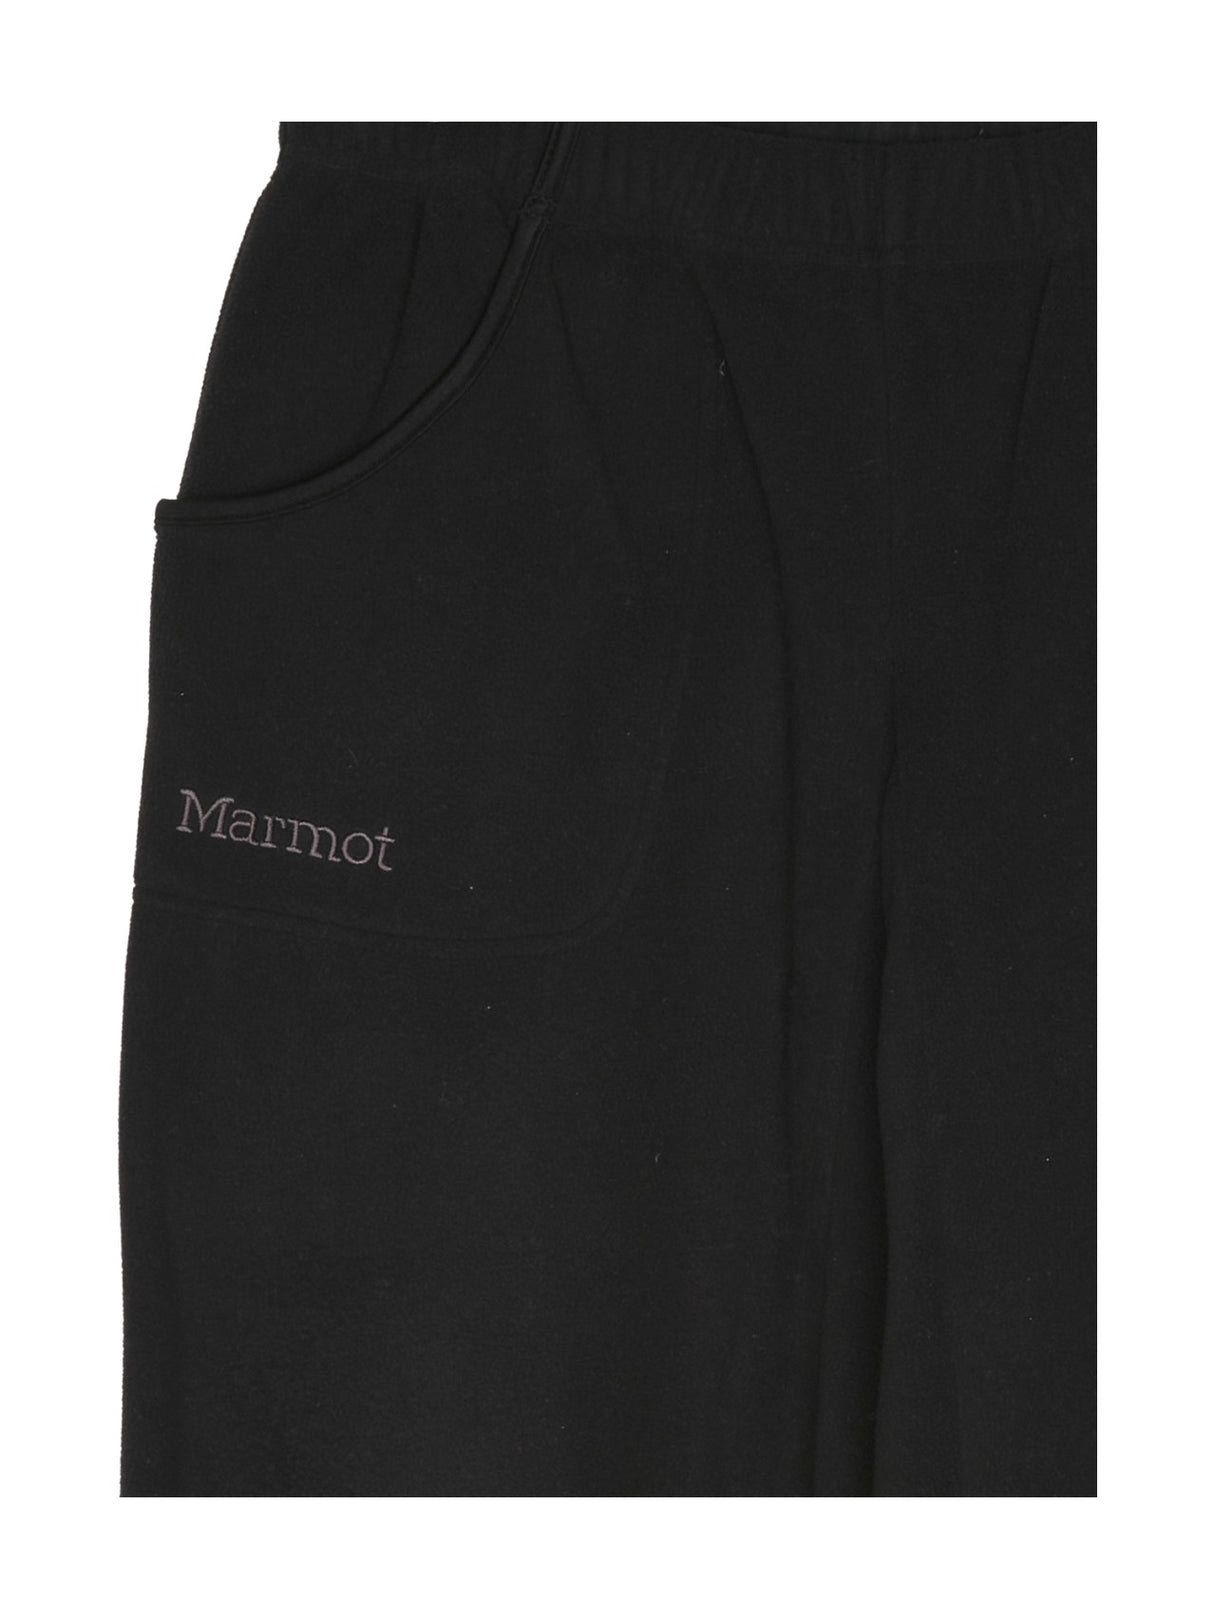 Marmot Jeans, Freizeithose für Herren